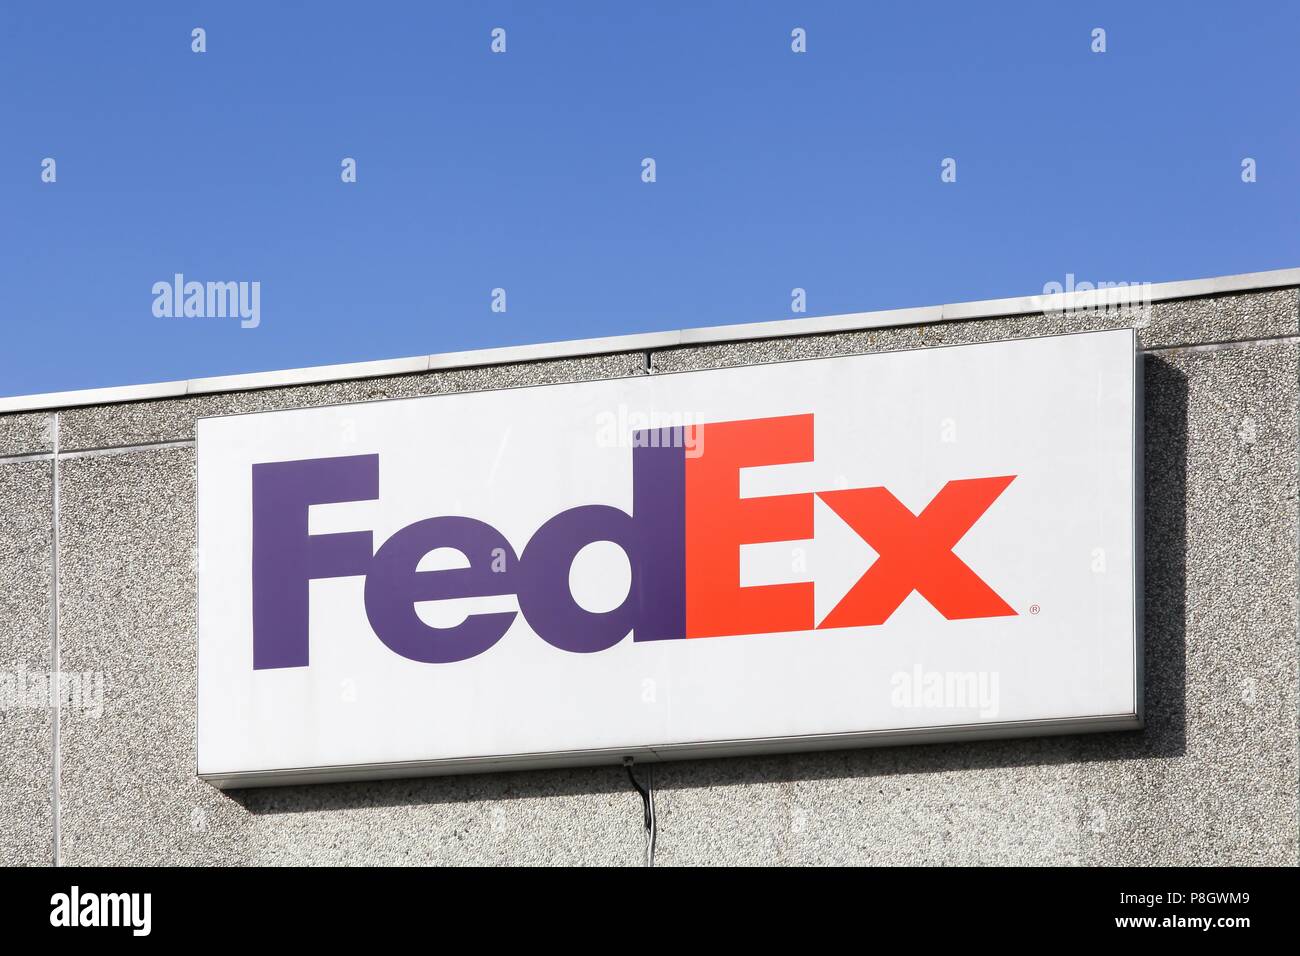 Kolding, Denmark - February 28, 2016: FedEx sign on a wall. FedEx ...